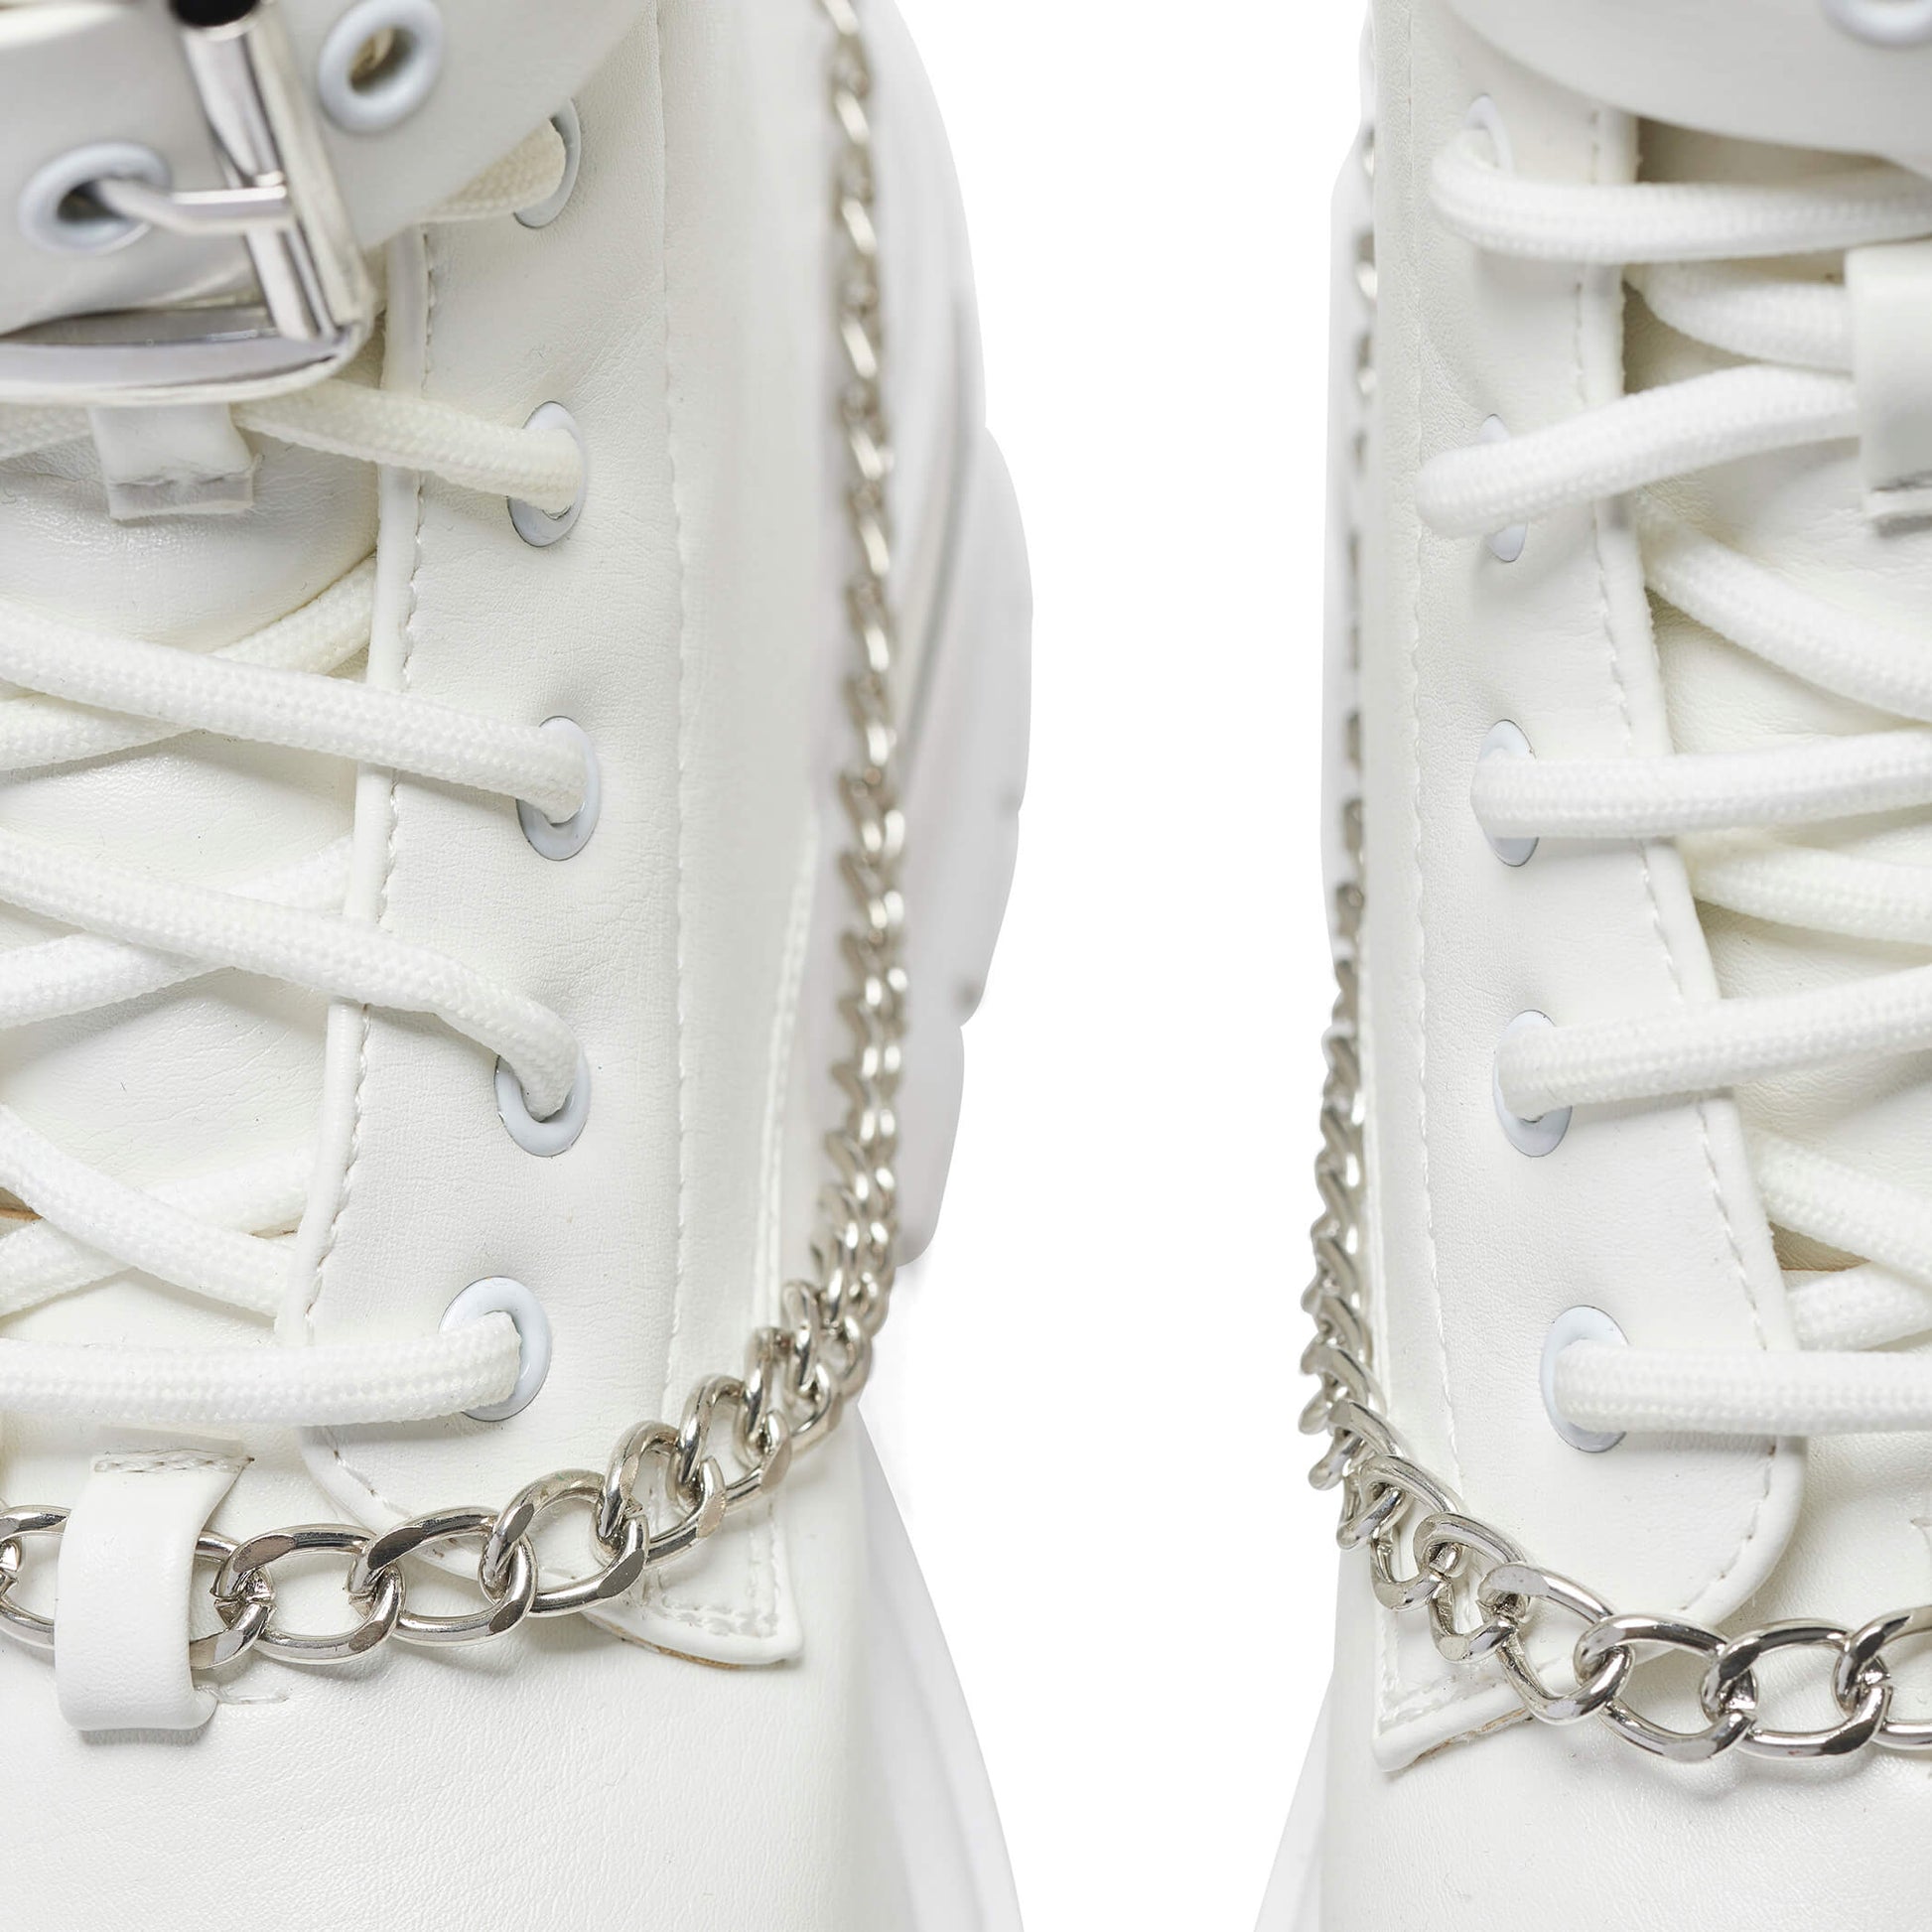 Borin Hardware Platform Boots - White - KOI Footwear - Chain Details